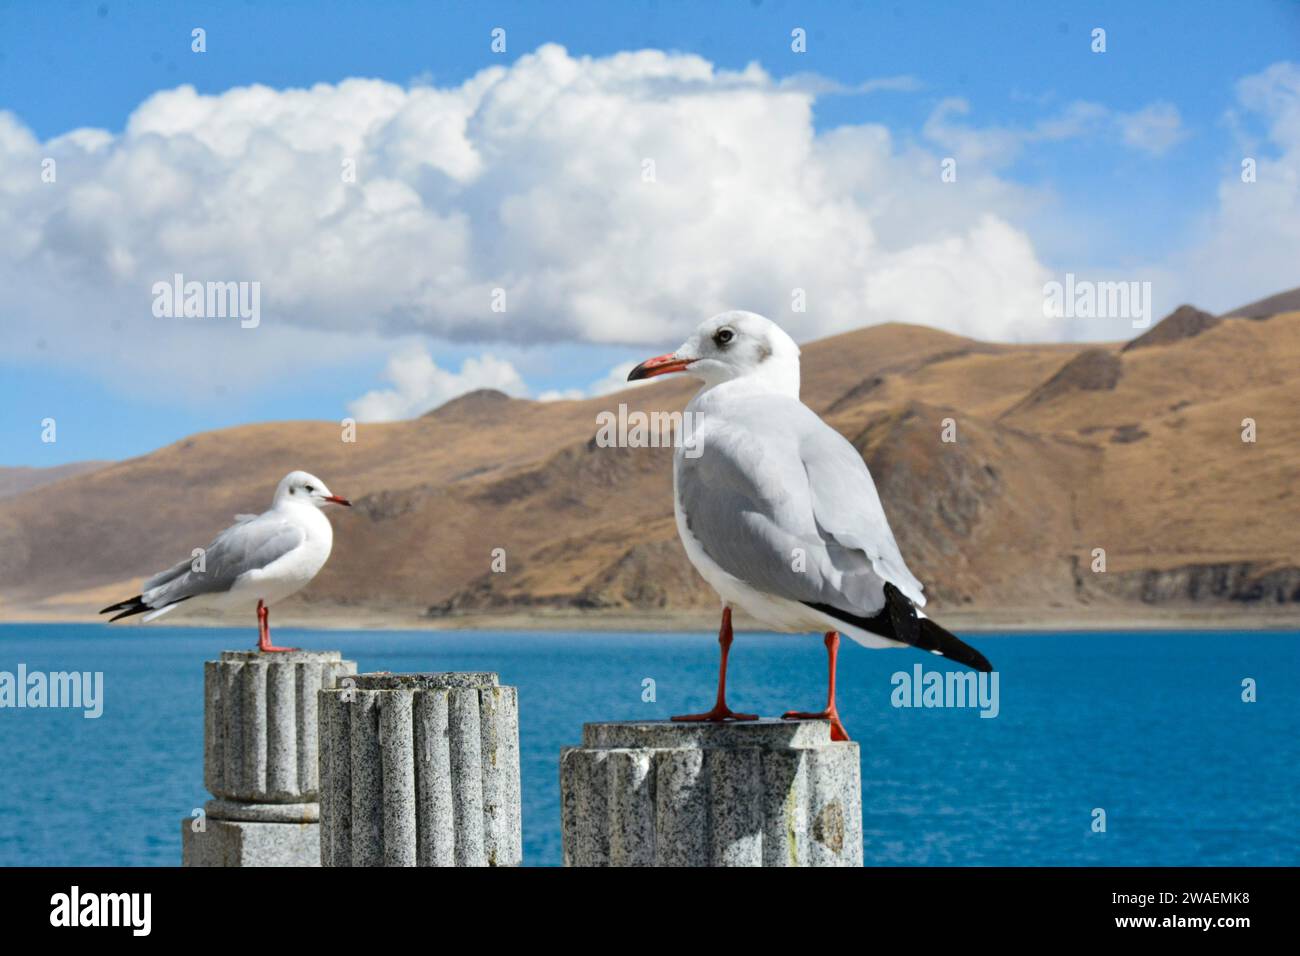 Die beiden Vögel thronten auf einem robusten Holzstamm und überblickten ein ruhiges Gewässer. Stockfoto